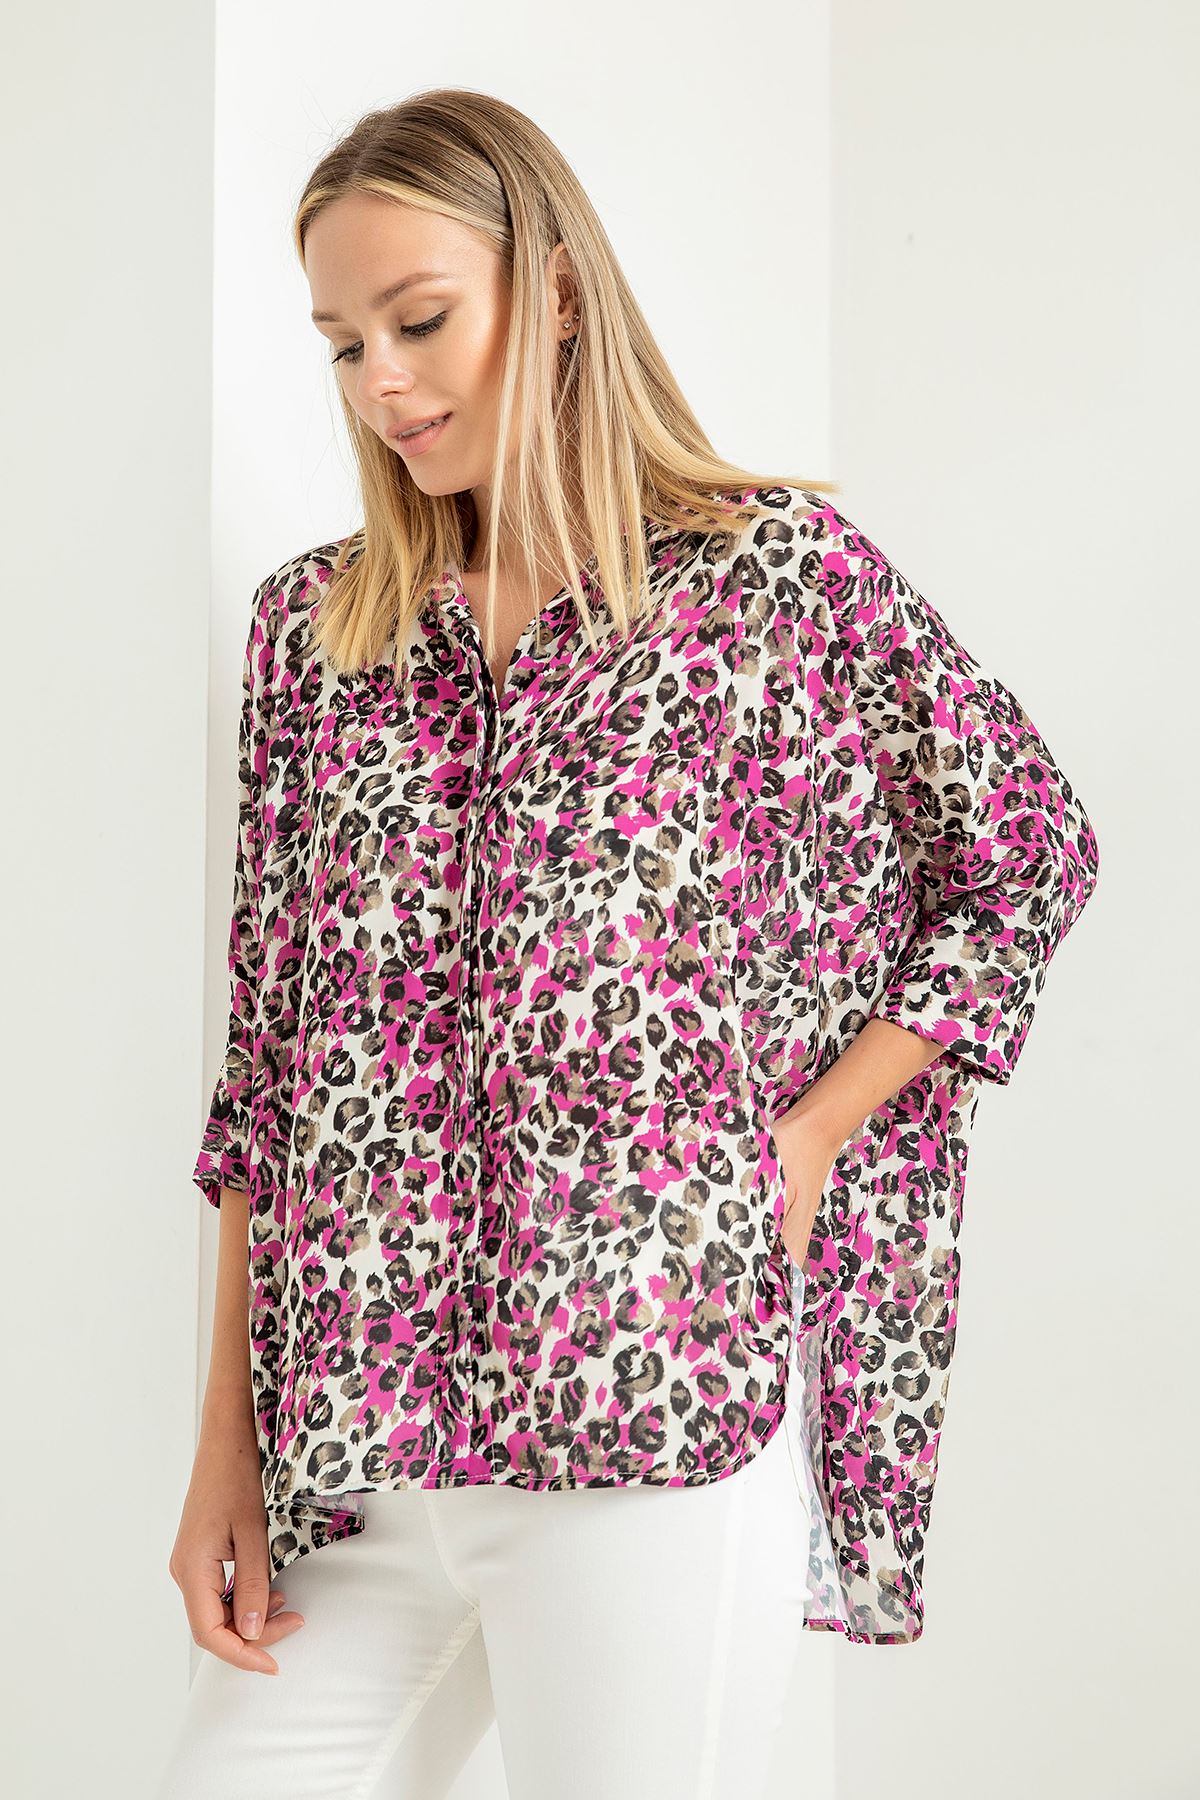 Jesica Fabric Short Hip Height Oversize Leopard Print Women'S Shirt - Fuchıa